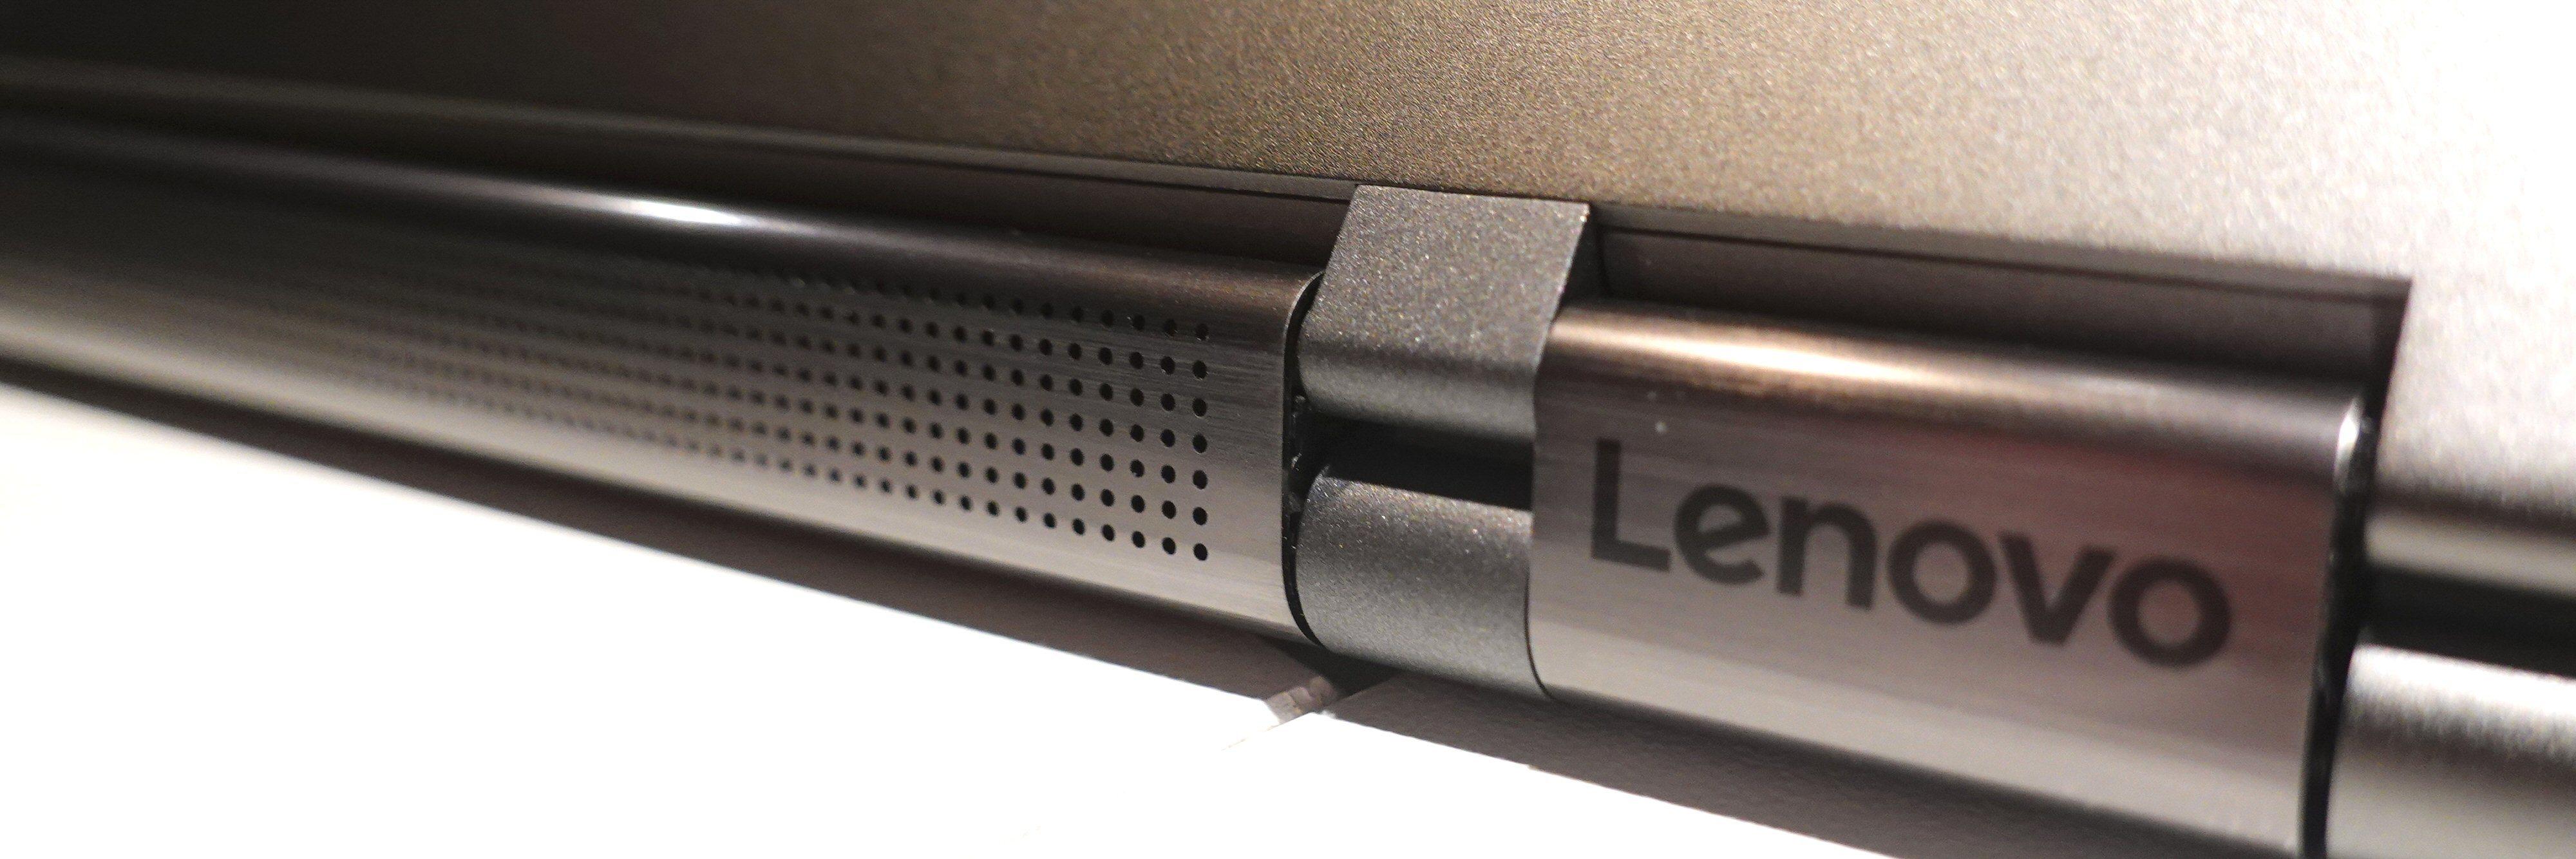 Lenovos «rotating sound bar».